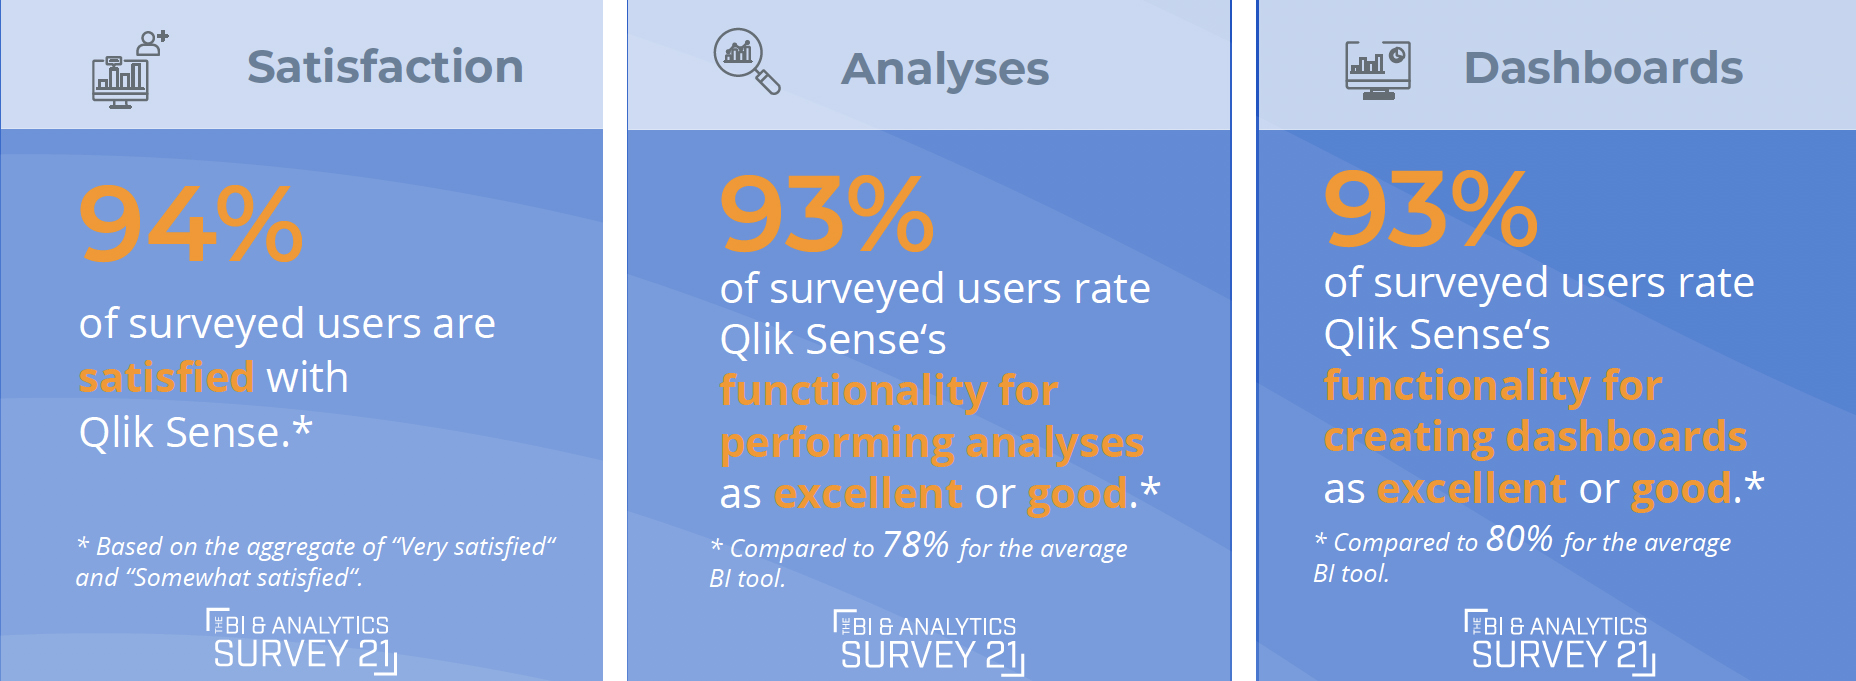 Wählen Sie BI-Benutzer Qlik Nummer 1 in Bezug auf Geschäftswert und Kundenerfahrung